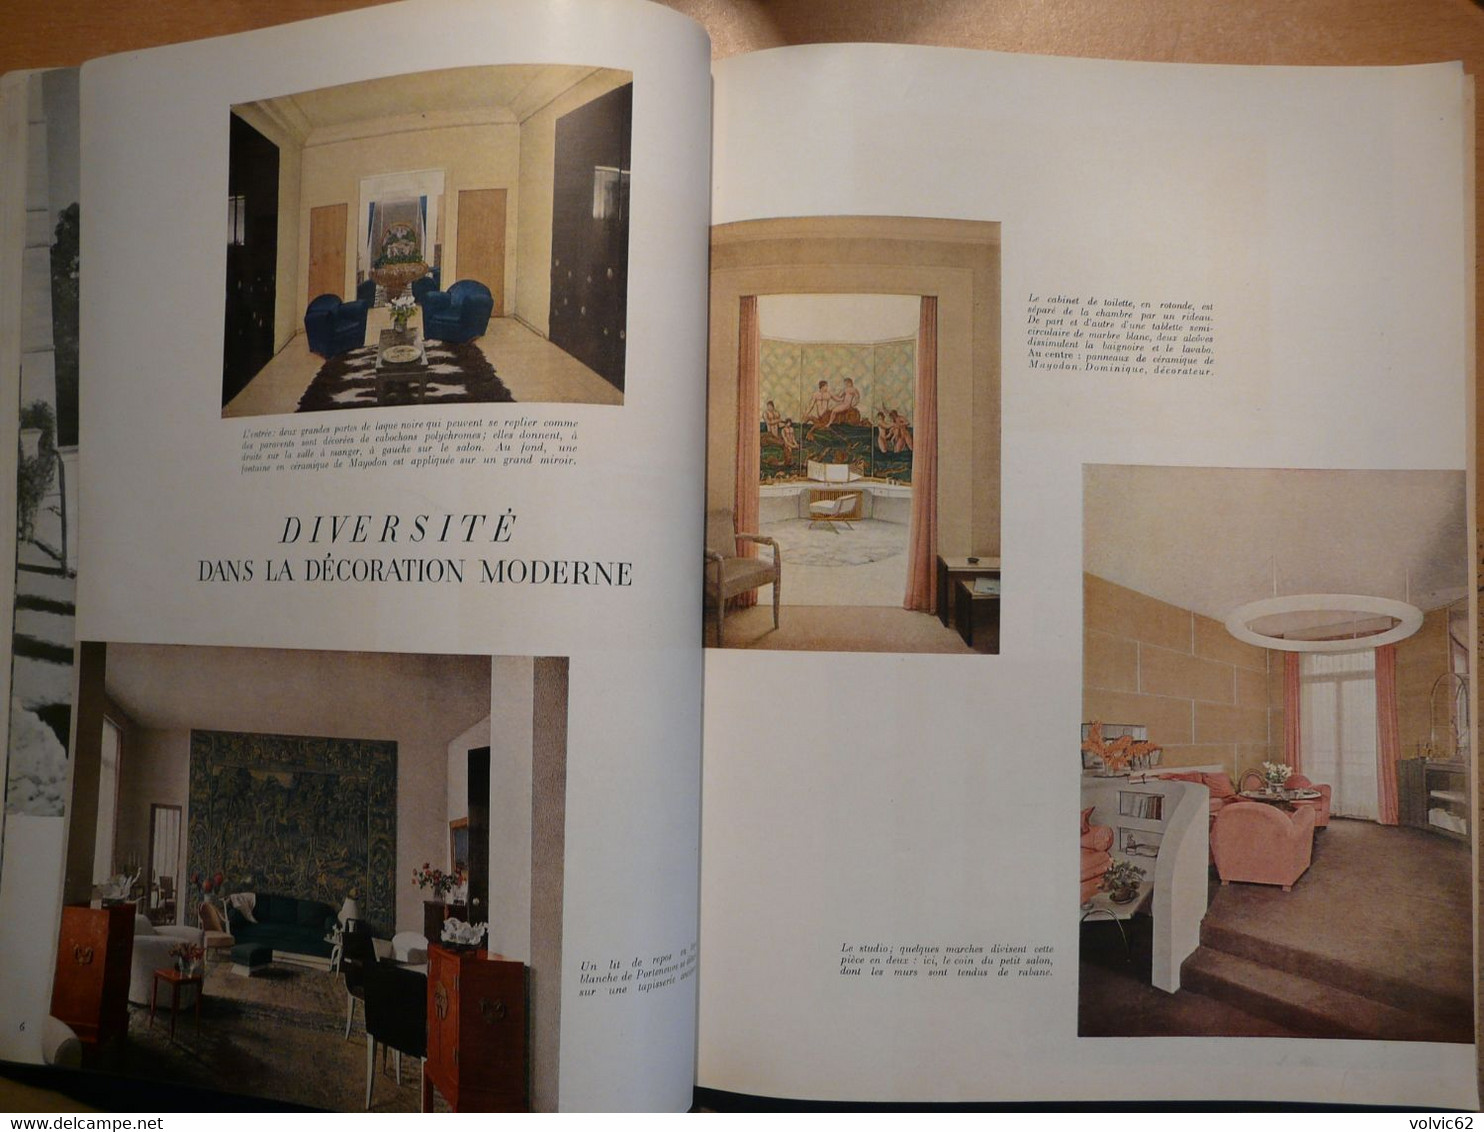 Plaisir de france 1947 chaise dieu chateau castries mime marceau hospice beaune bourgogne décoration moderne